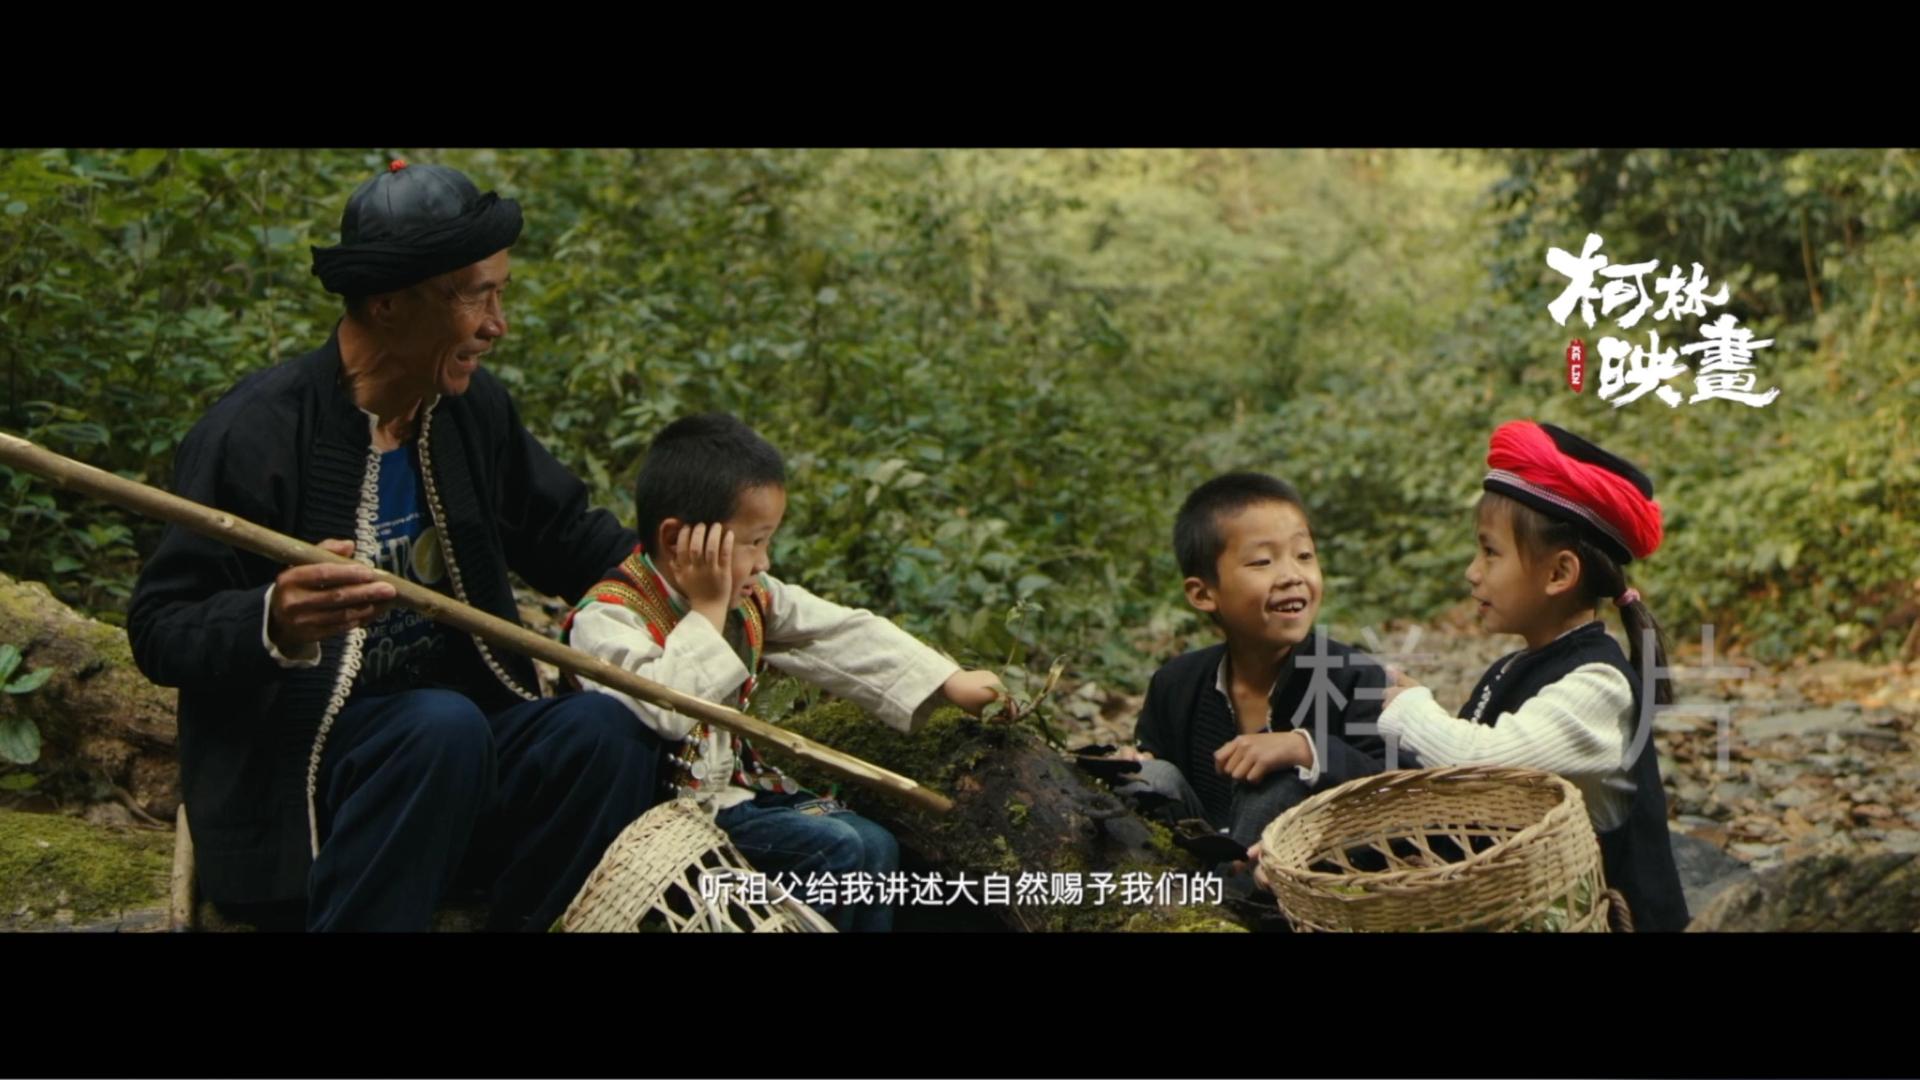 黄连山国家自然保护区宣传片——《坚守》